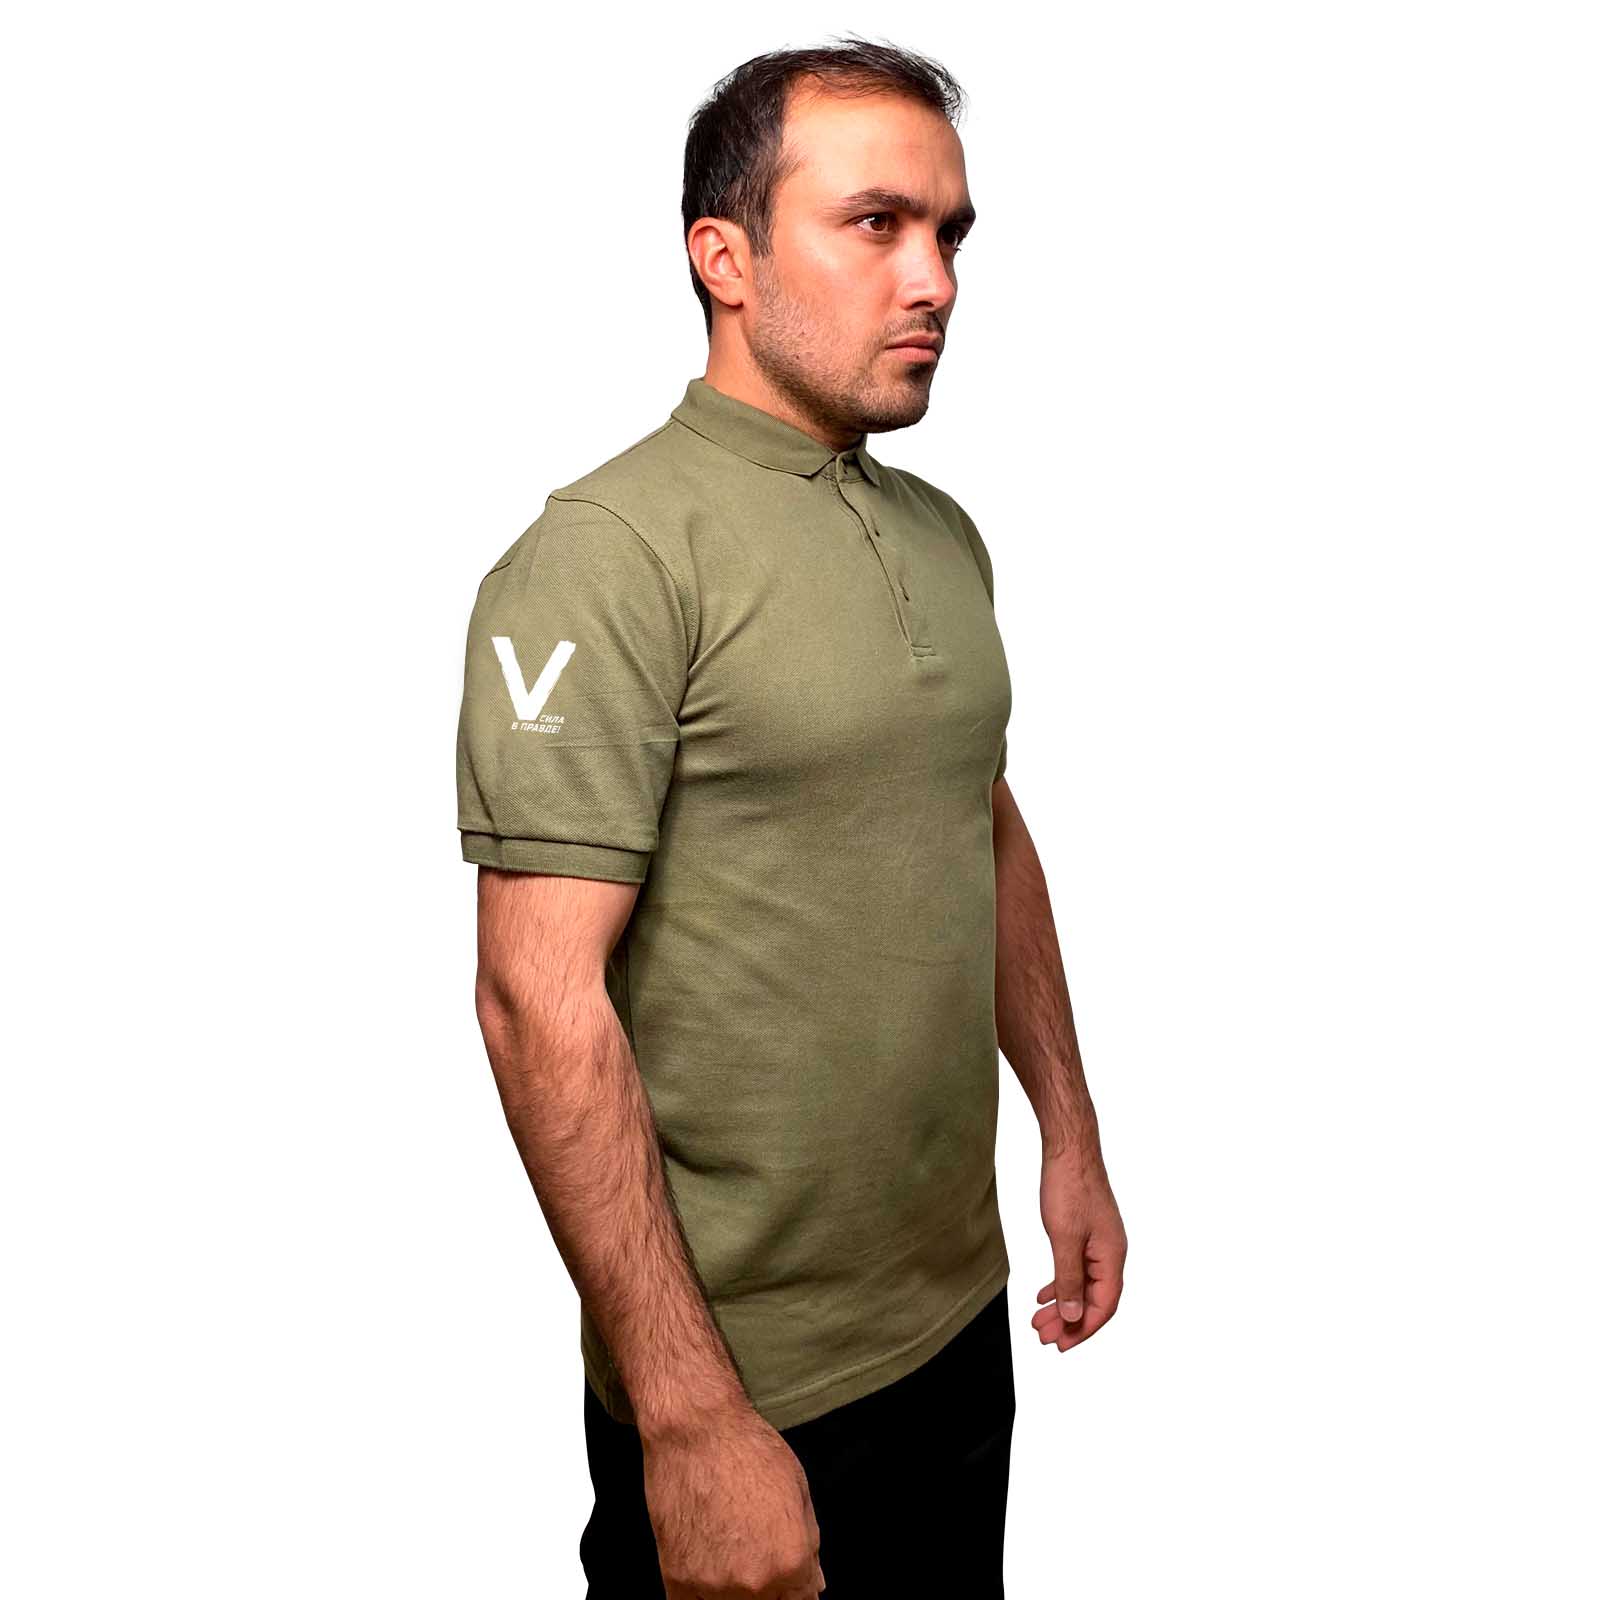 Купить трикотажную мужскую футболку-поло V онлайн выгодно